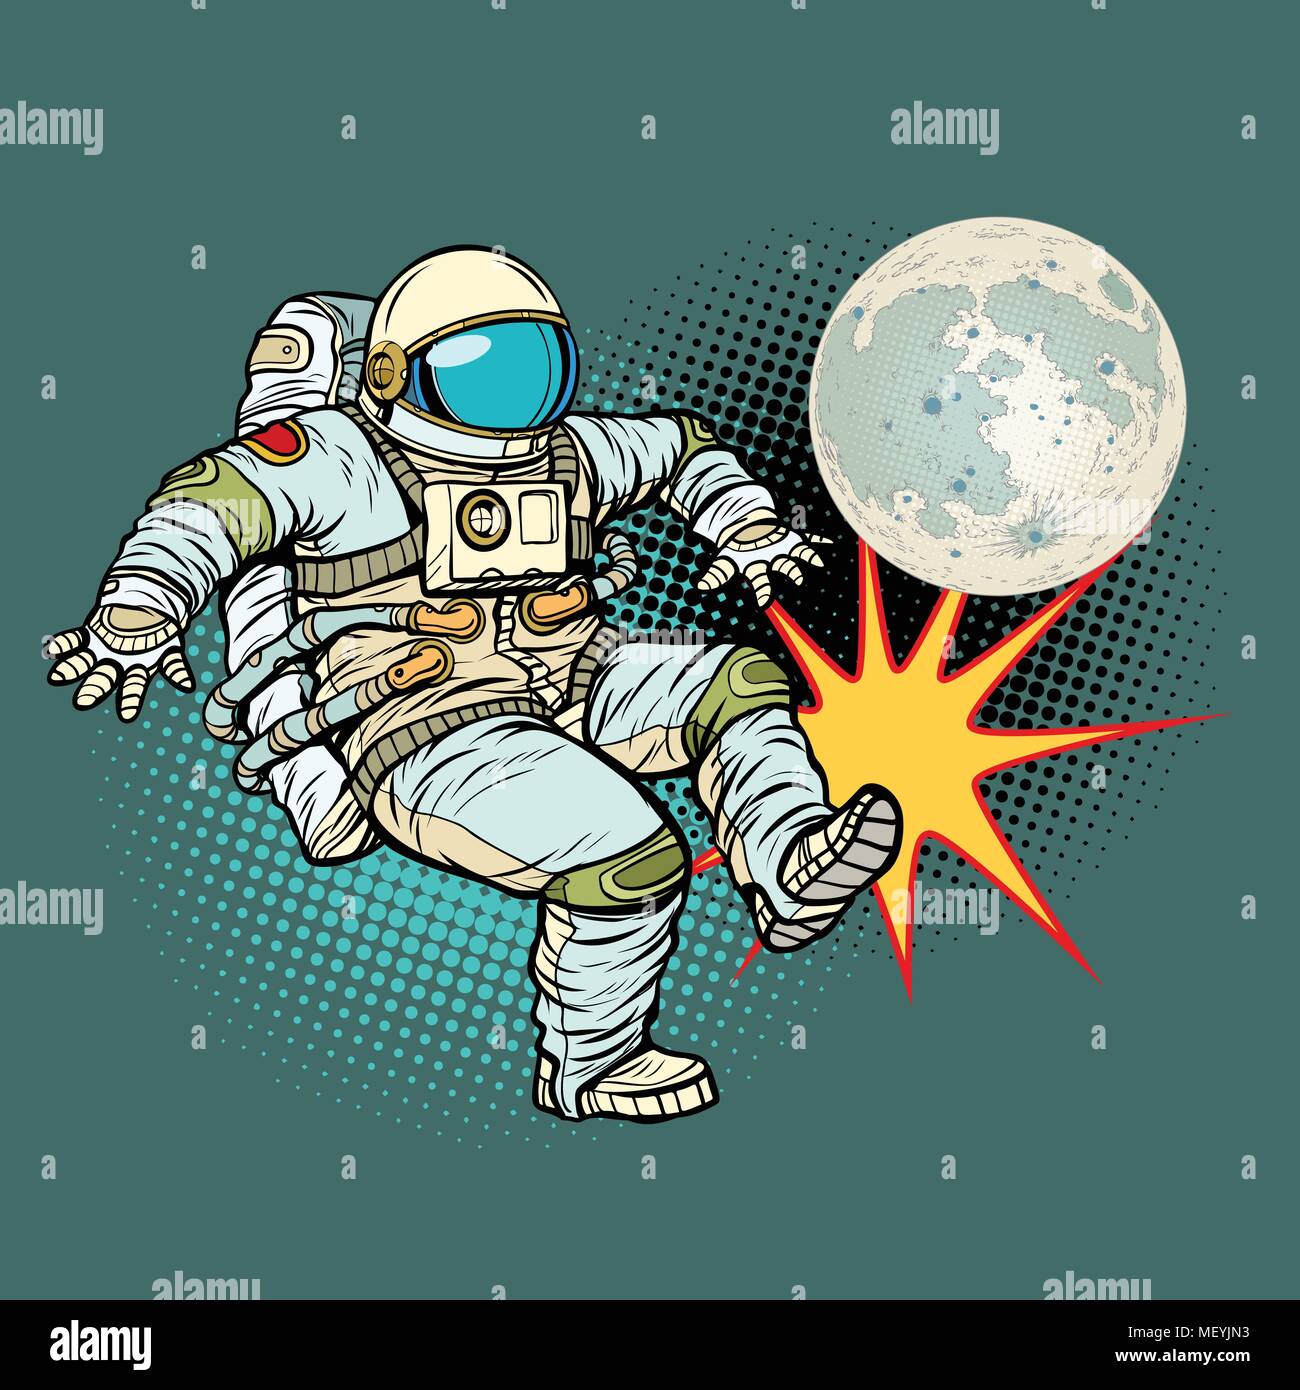 Joue au football avec l'astronaute lune Illustration de Vecteur